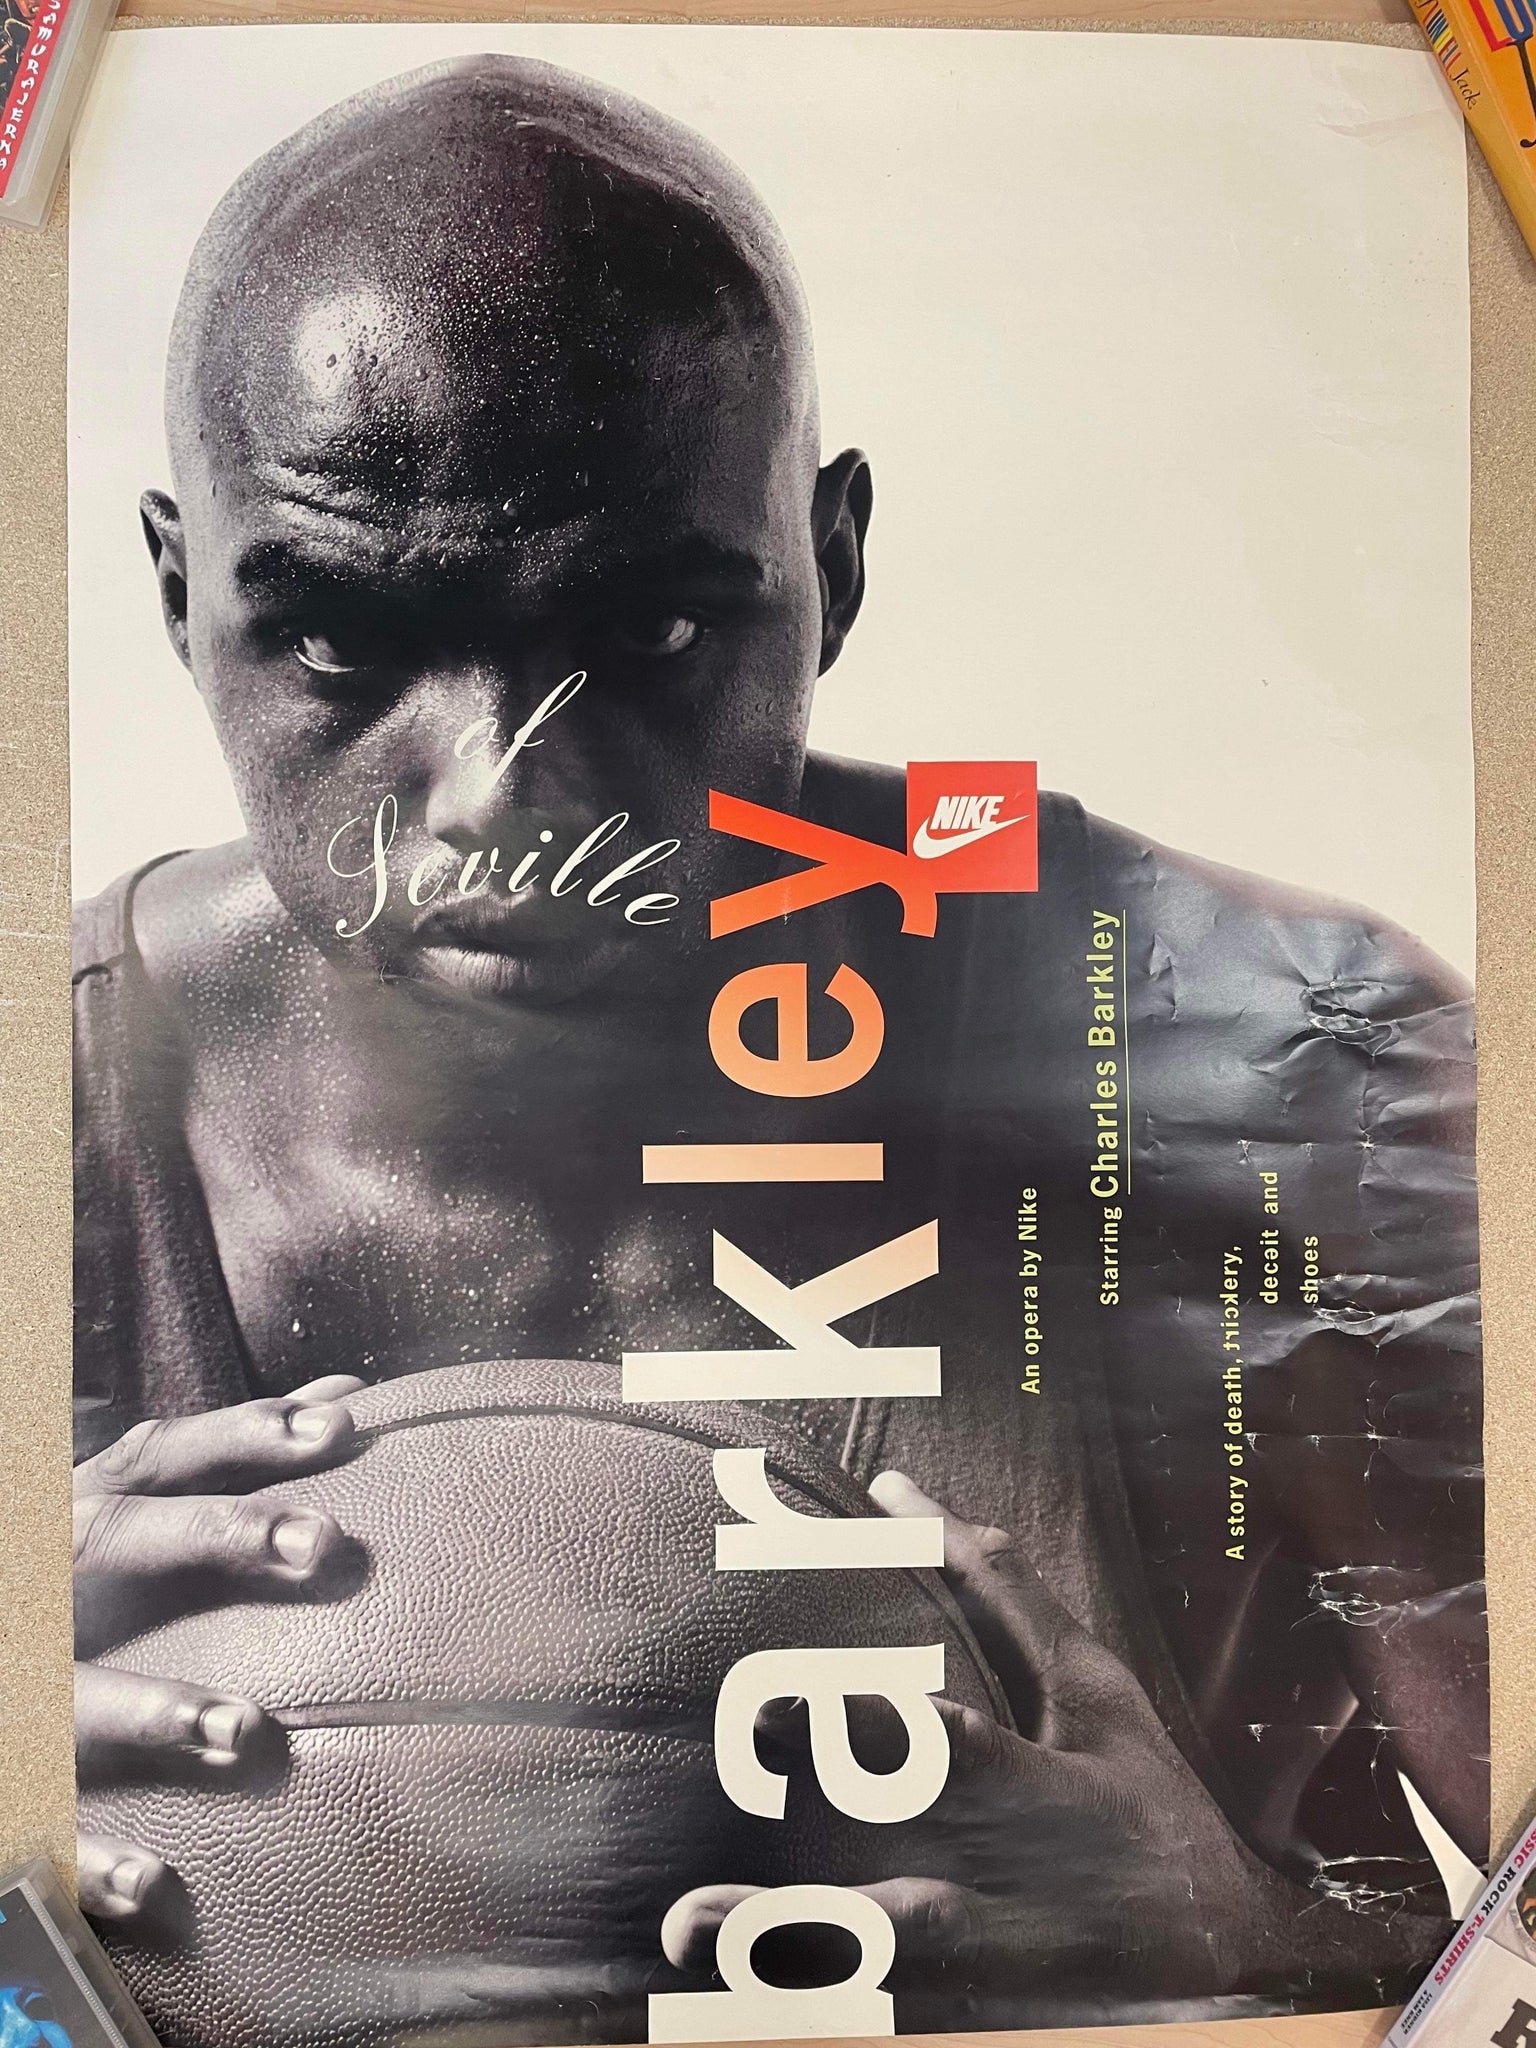 Charles Barkley of Seville Nike Promo Poster - 83.5x118